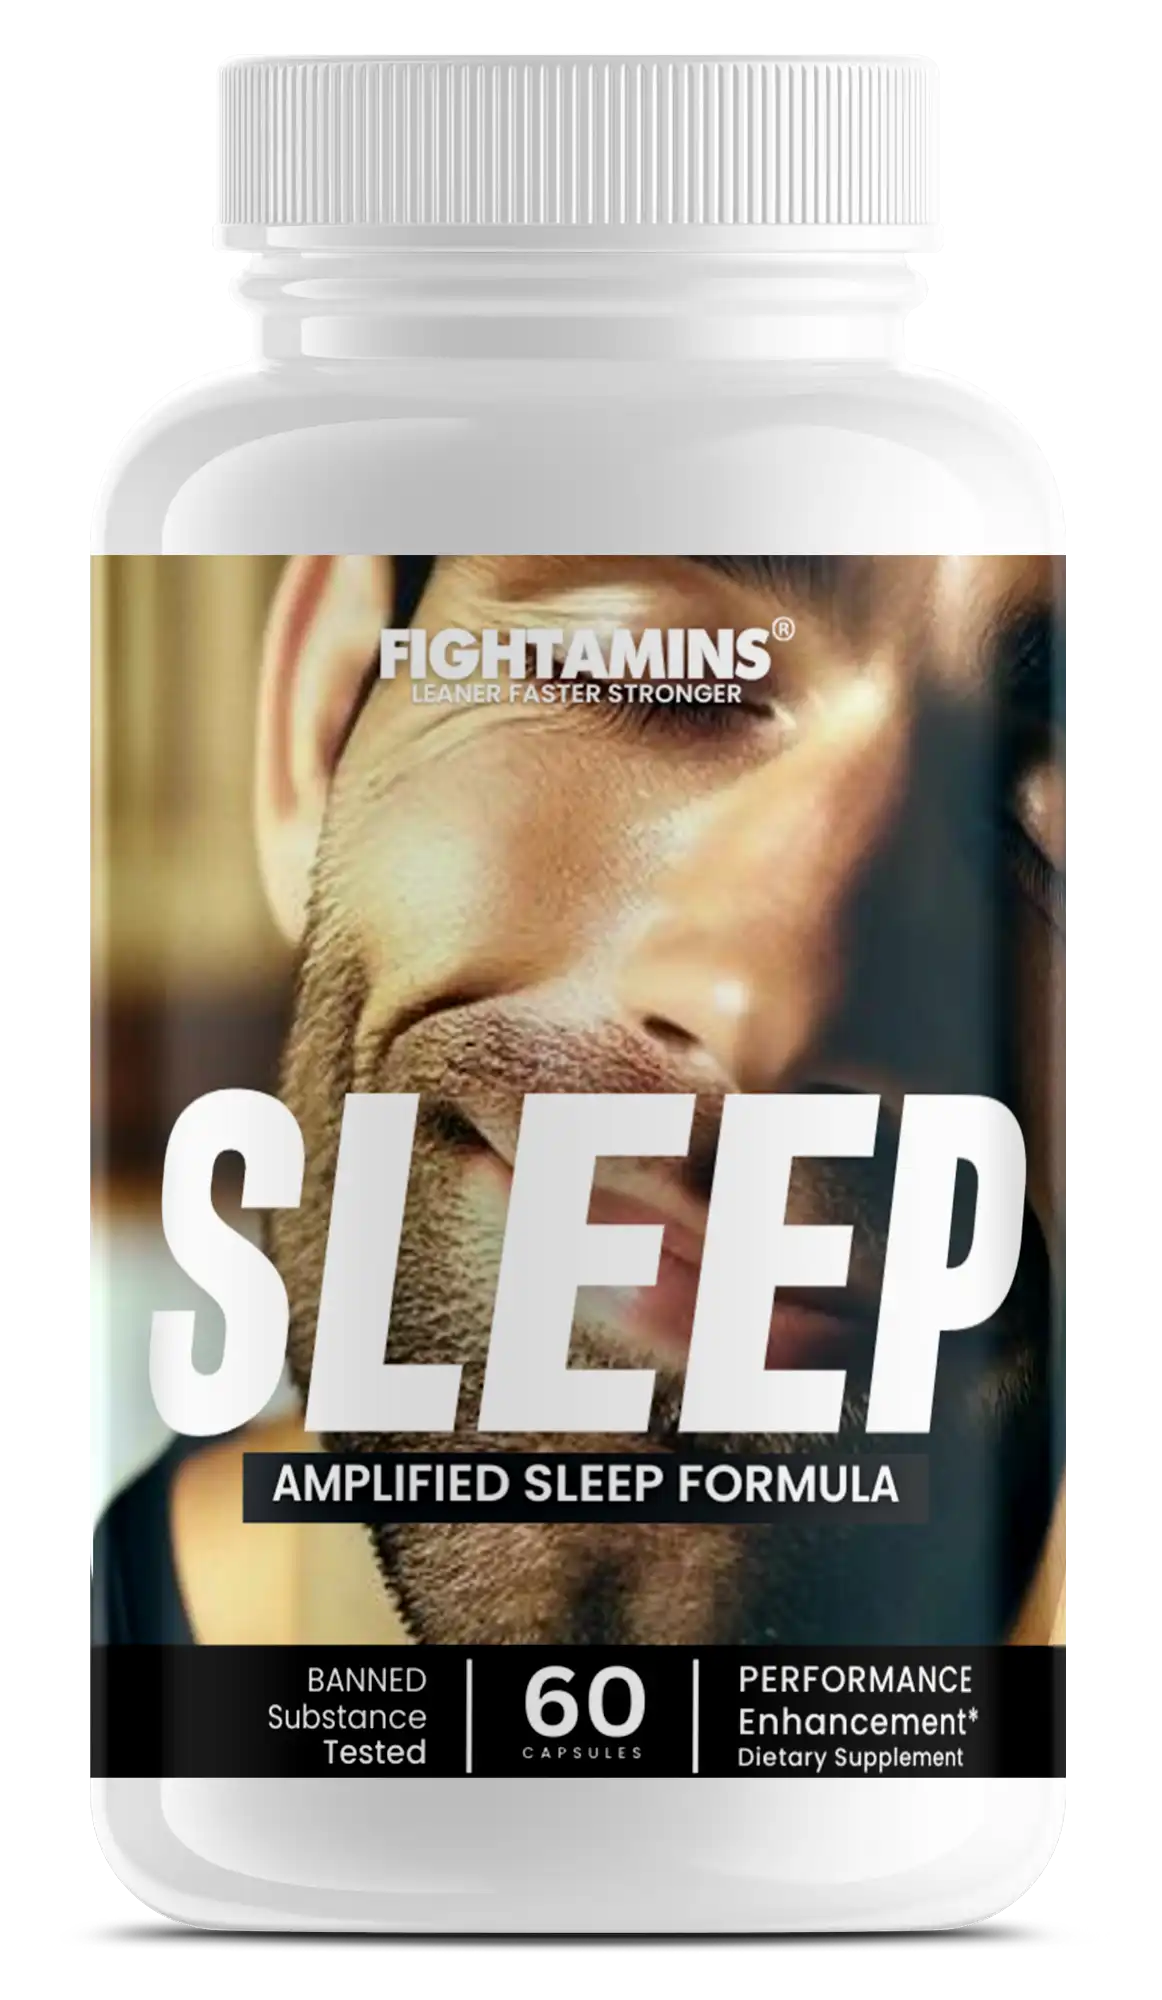 SLEEP - Amplified Sleep Aid  Formula